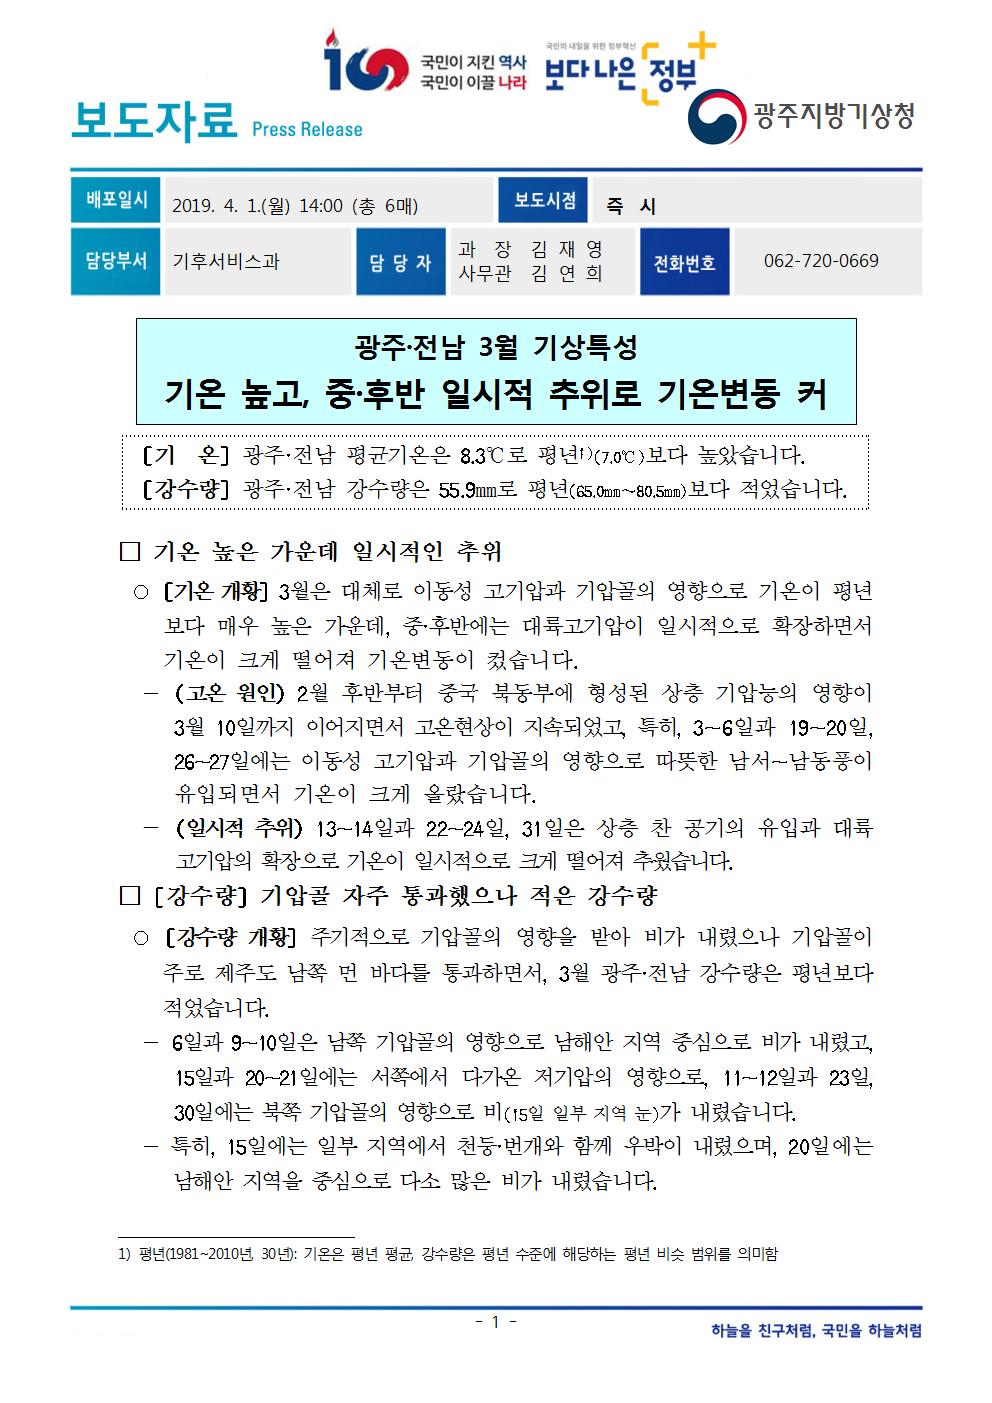 [보도자료] 광주·전남 3월 기상특성